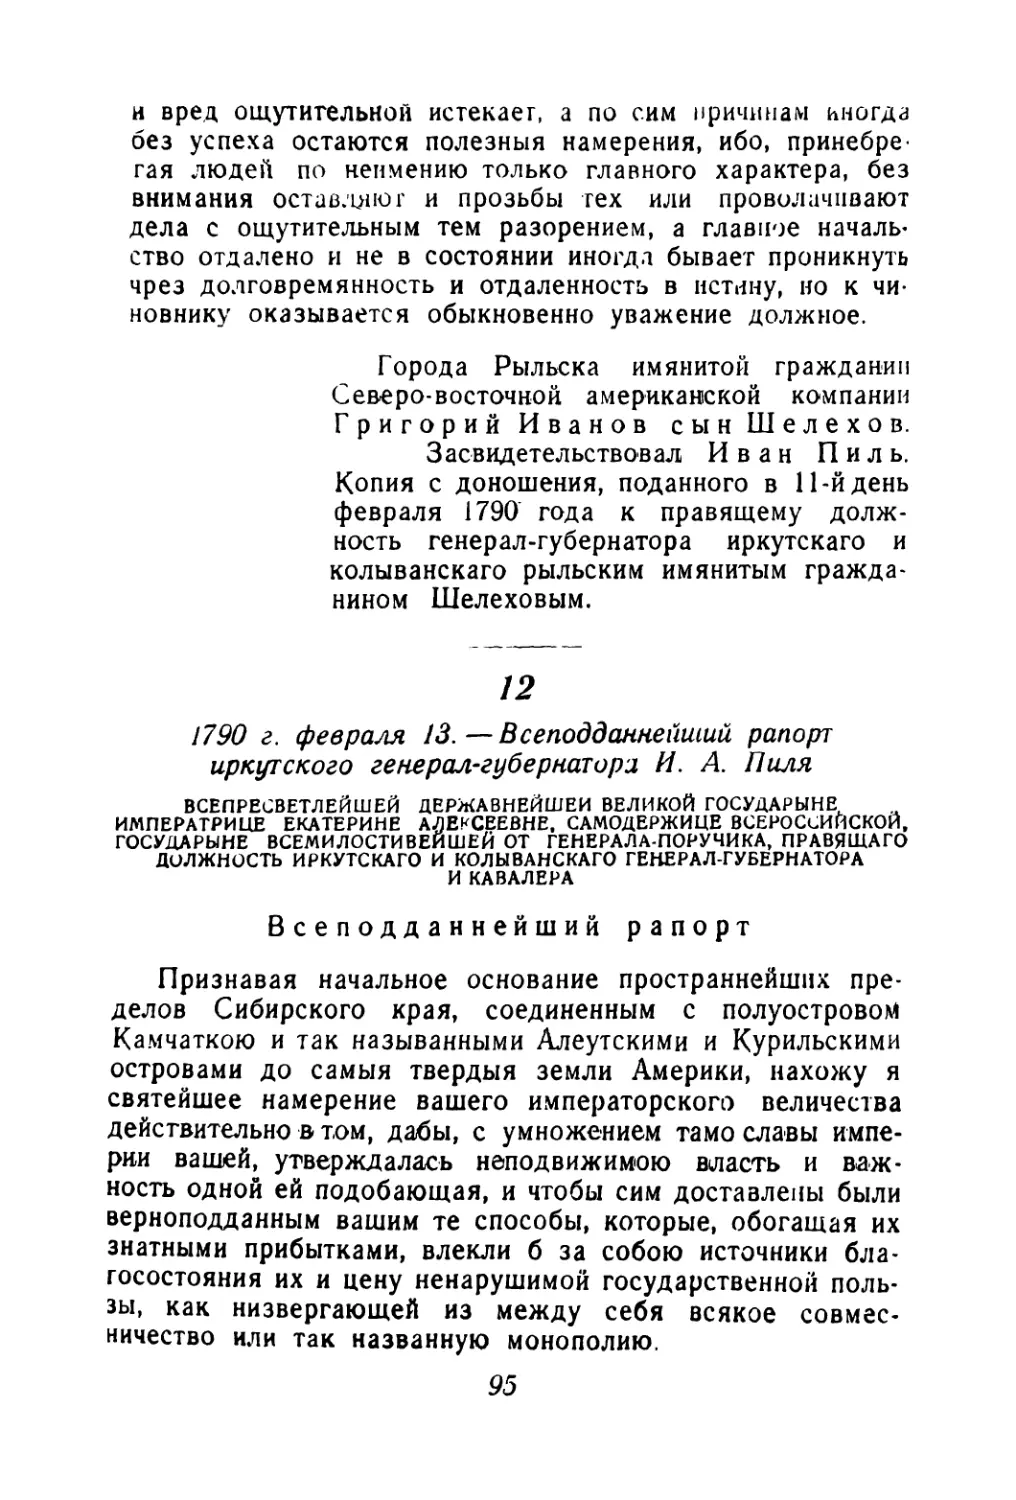 12. 1790 г. февраля 13.—Всеподданнейший рапорт иркутского генерал-губернатора И. А. Пиля